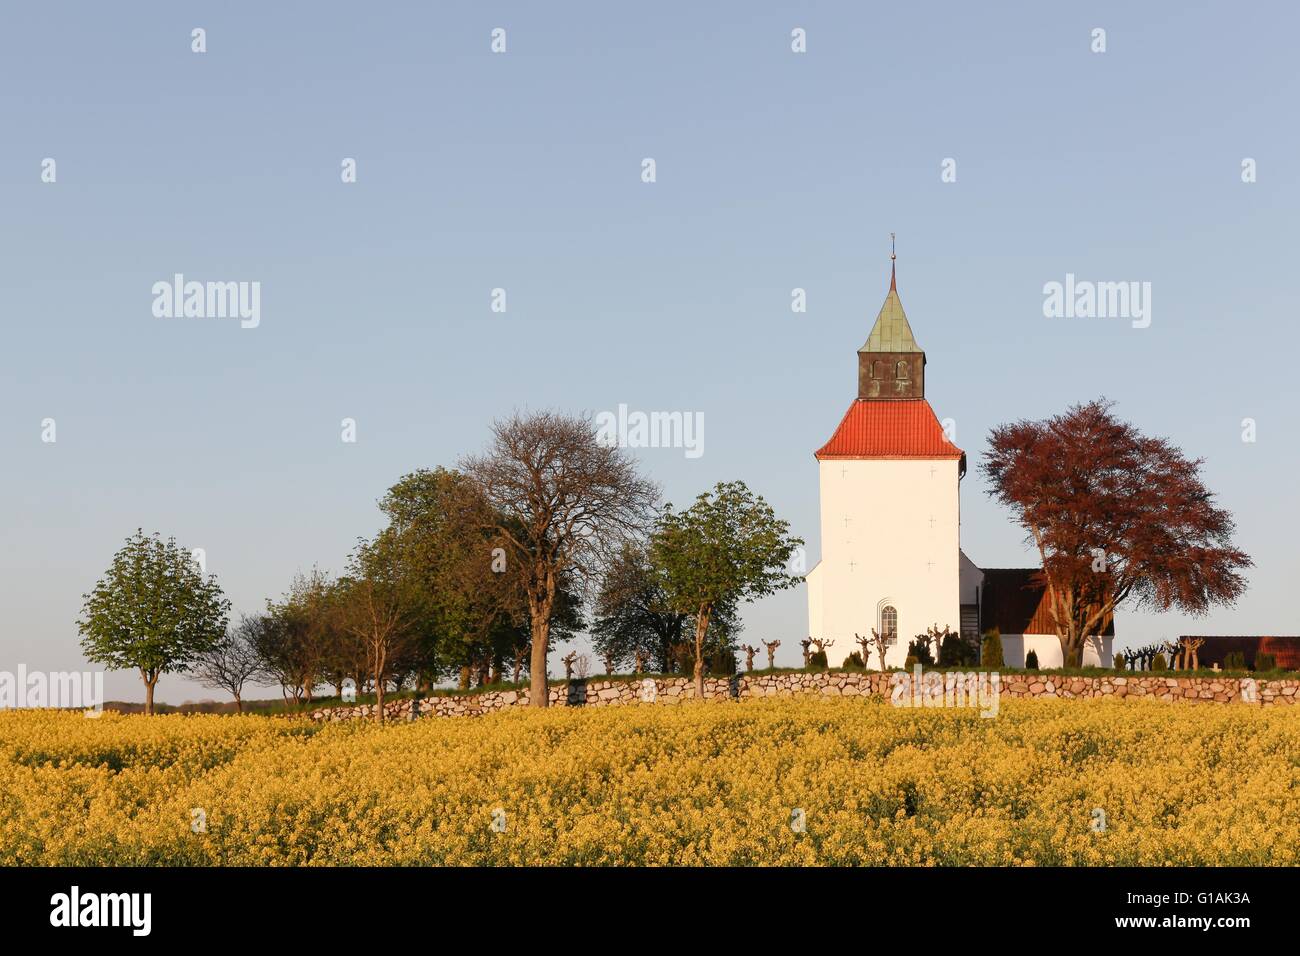 Iglesia típica danesa en el campo con un campo de colza Foto de stock